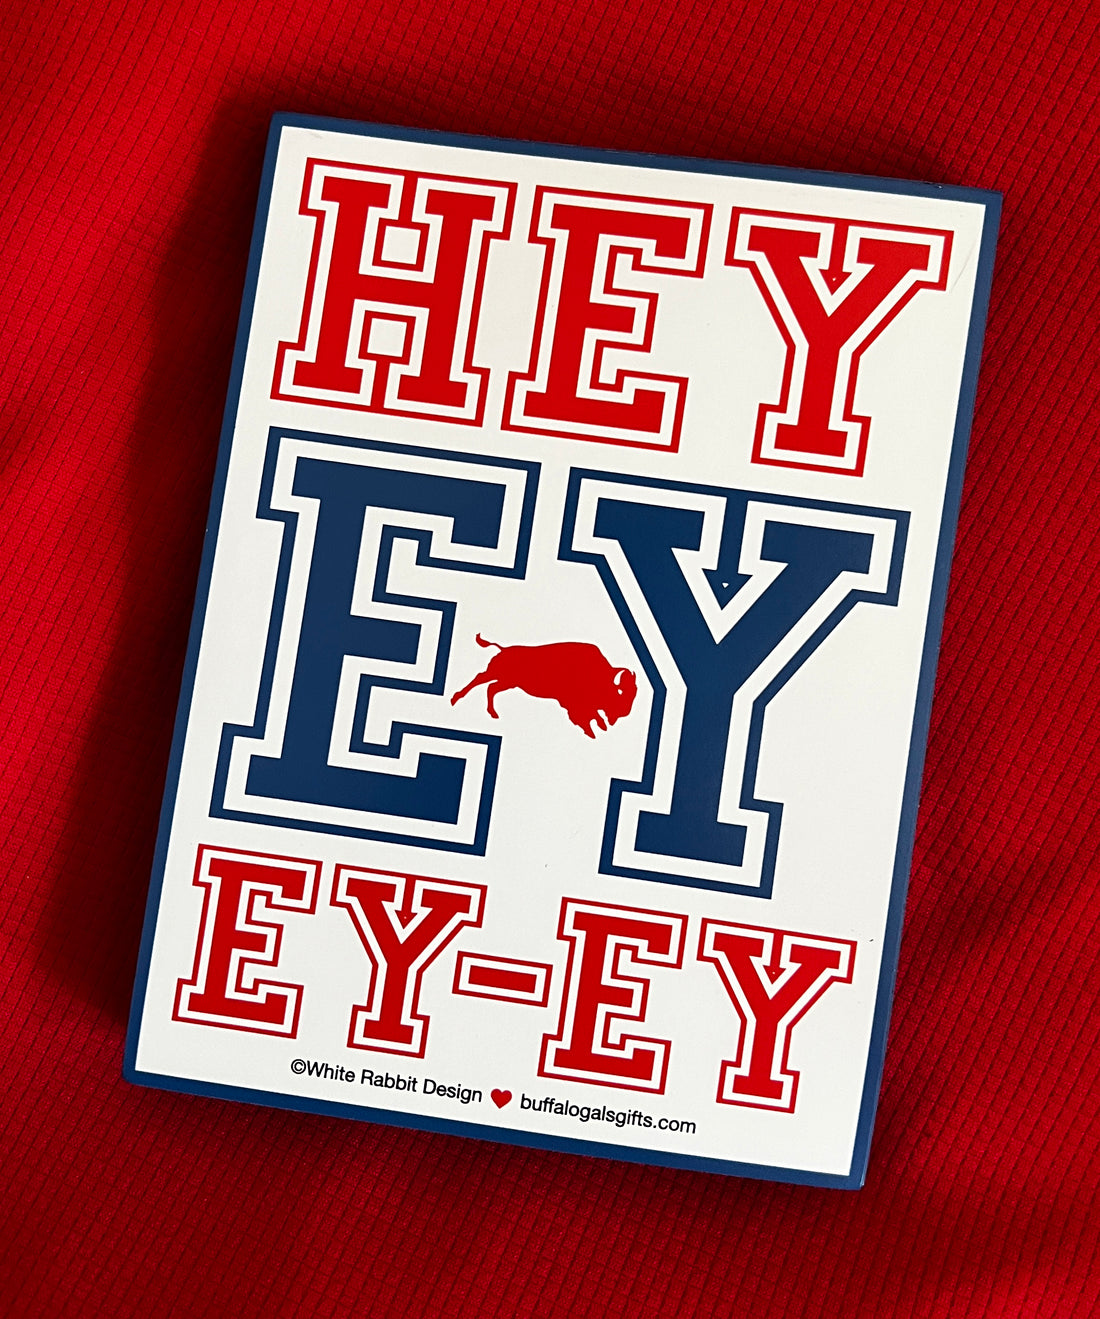 HEY-EY-EY-EY! The Buffalo Bills trivia edition